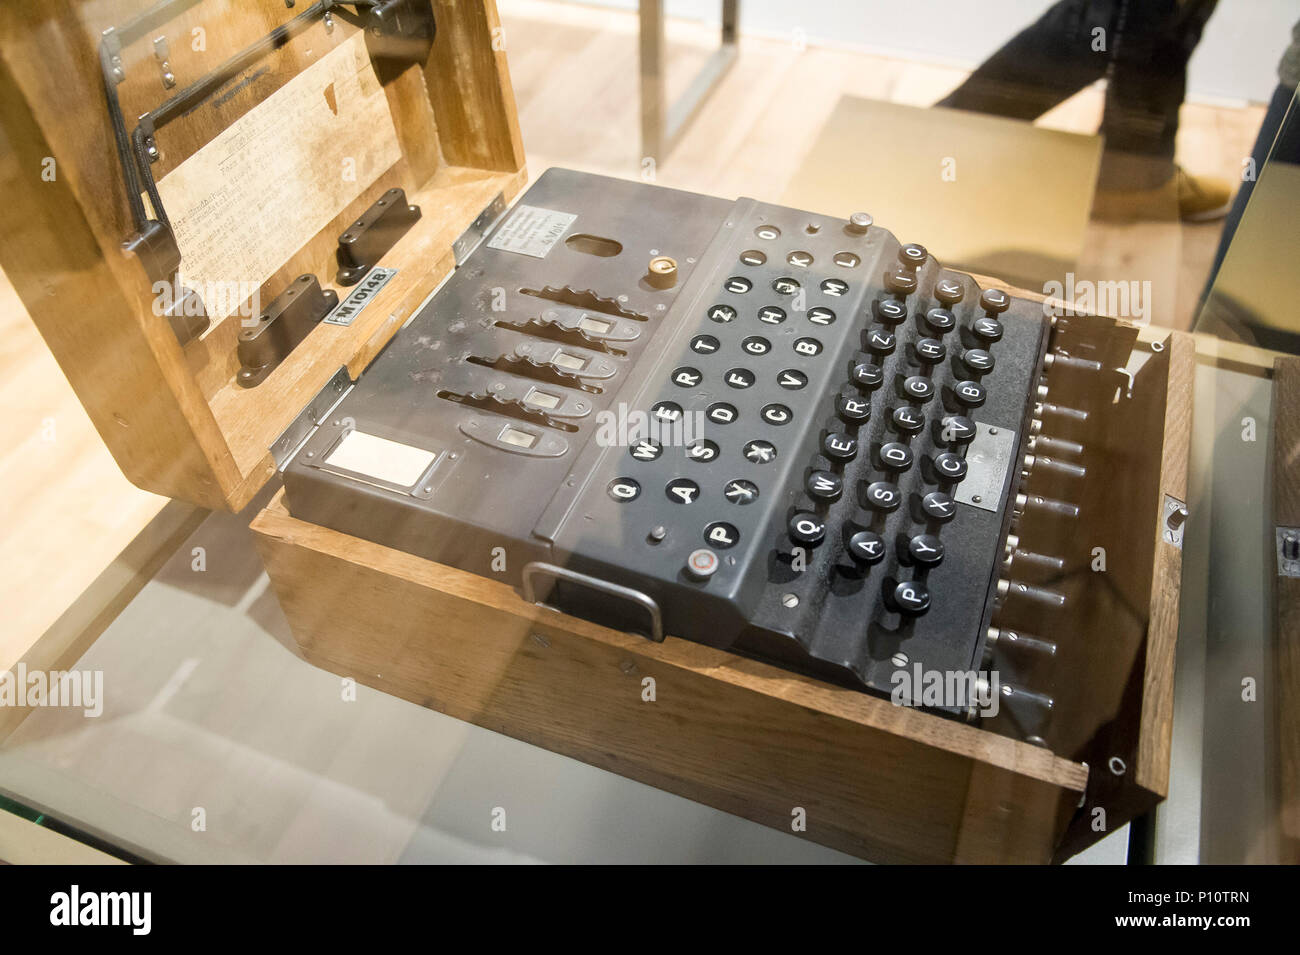 Enigma Maschine, Deutsch Elektro Mechanische Rotor cipher Maschine, von der Nazi-deutschen verwendet kommerzielle, diplomatische und militärische Kommunikation zu schützen. Poli Stockfoto